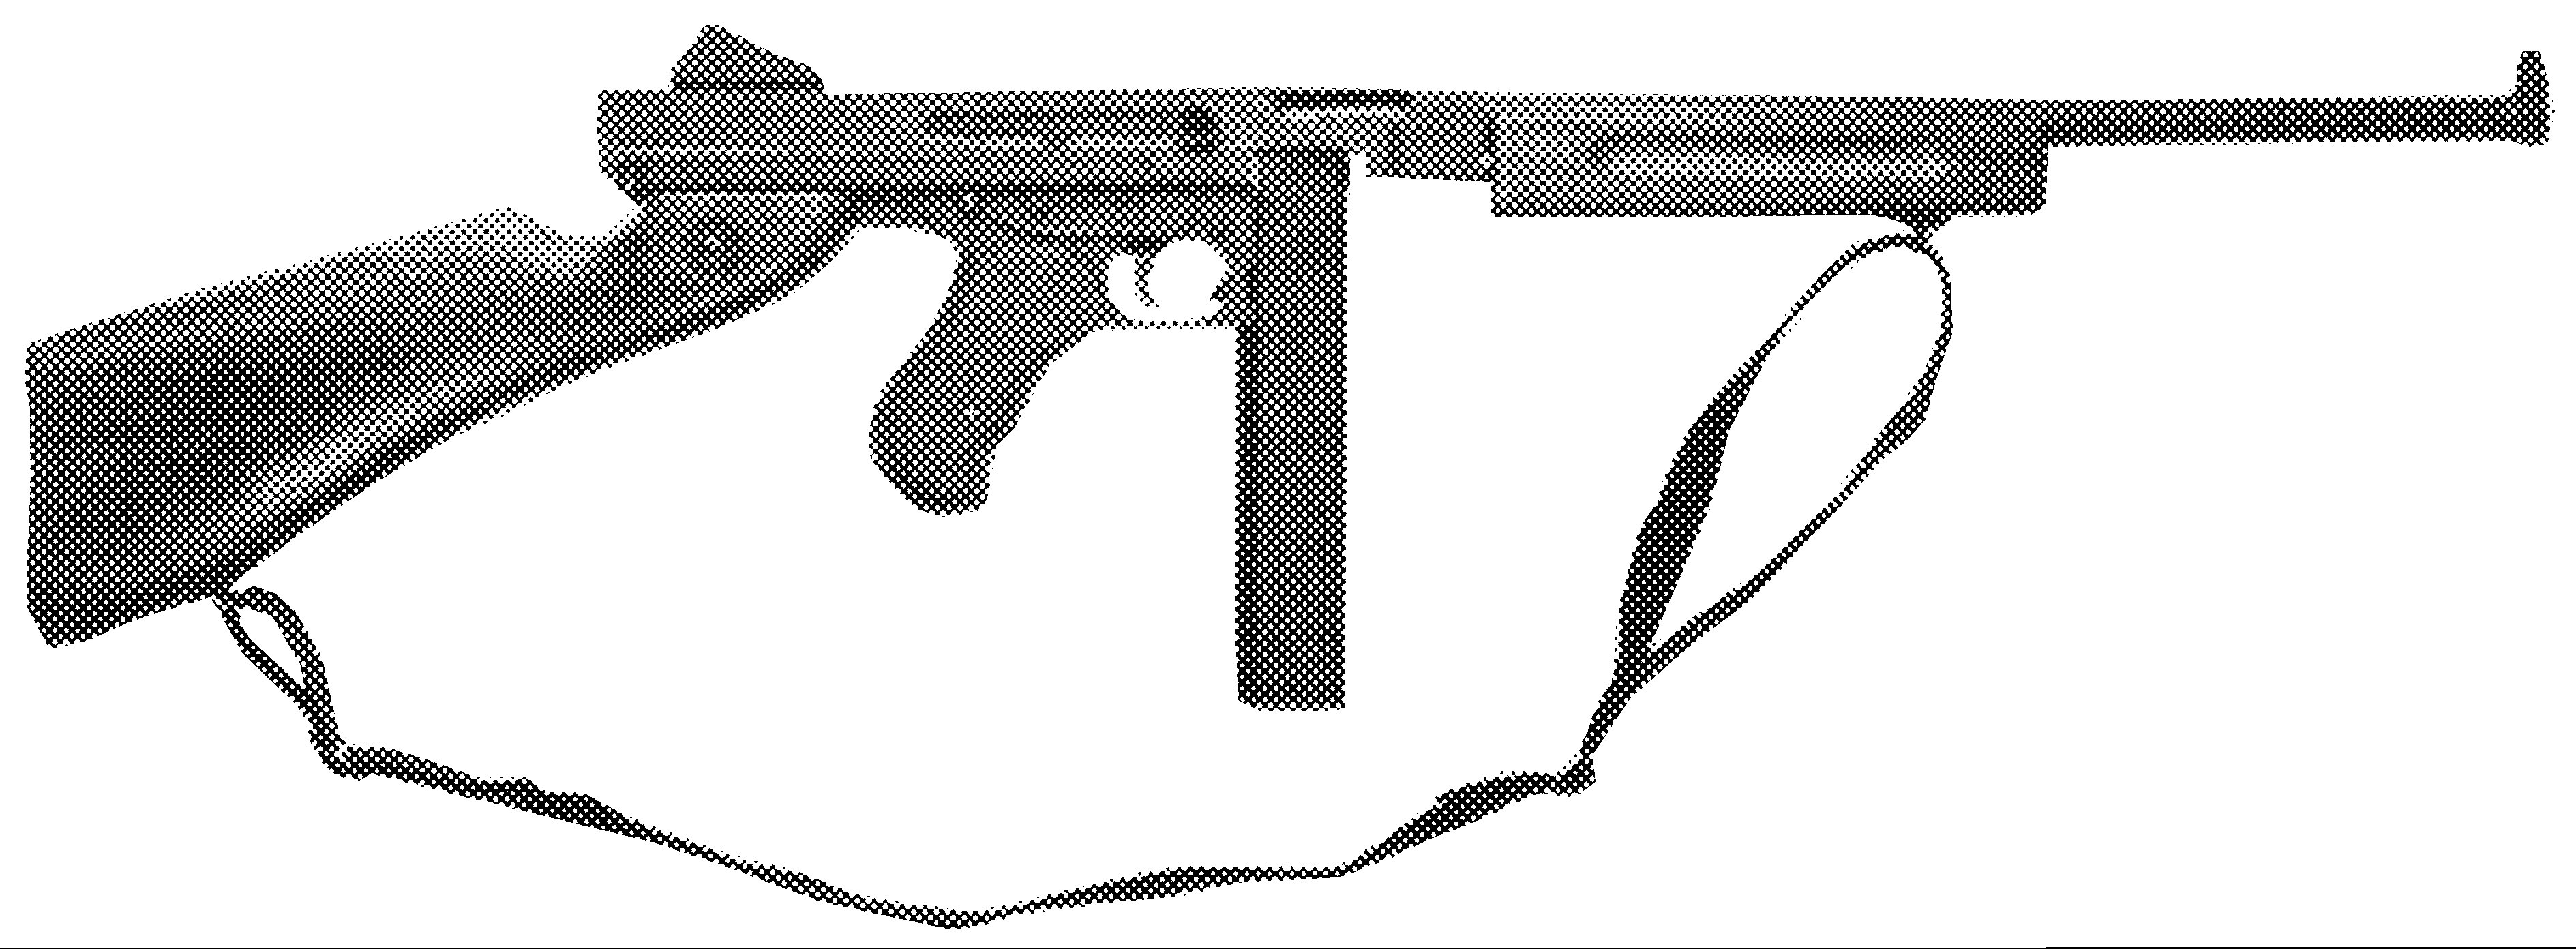 M-1 Semi-Automatic Carbine